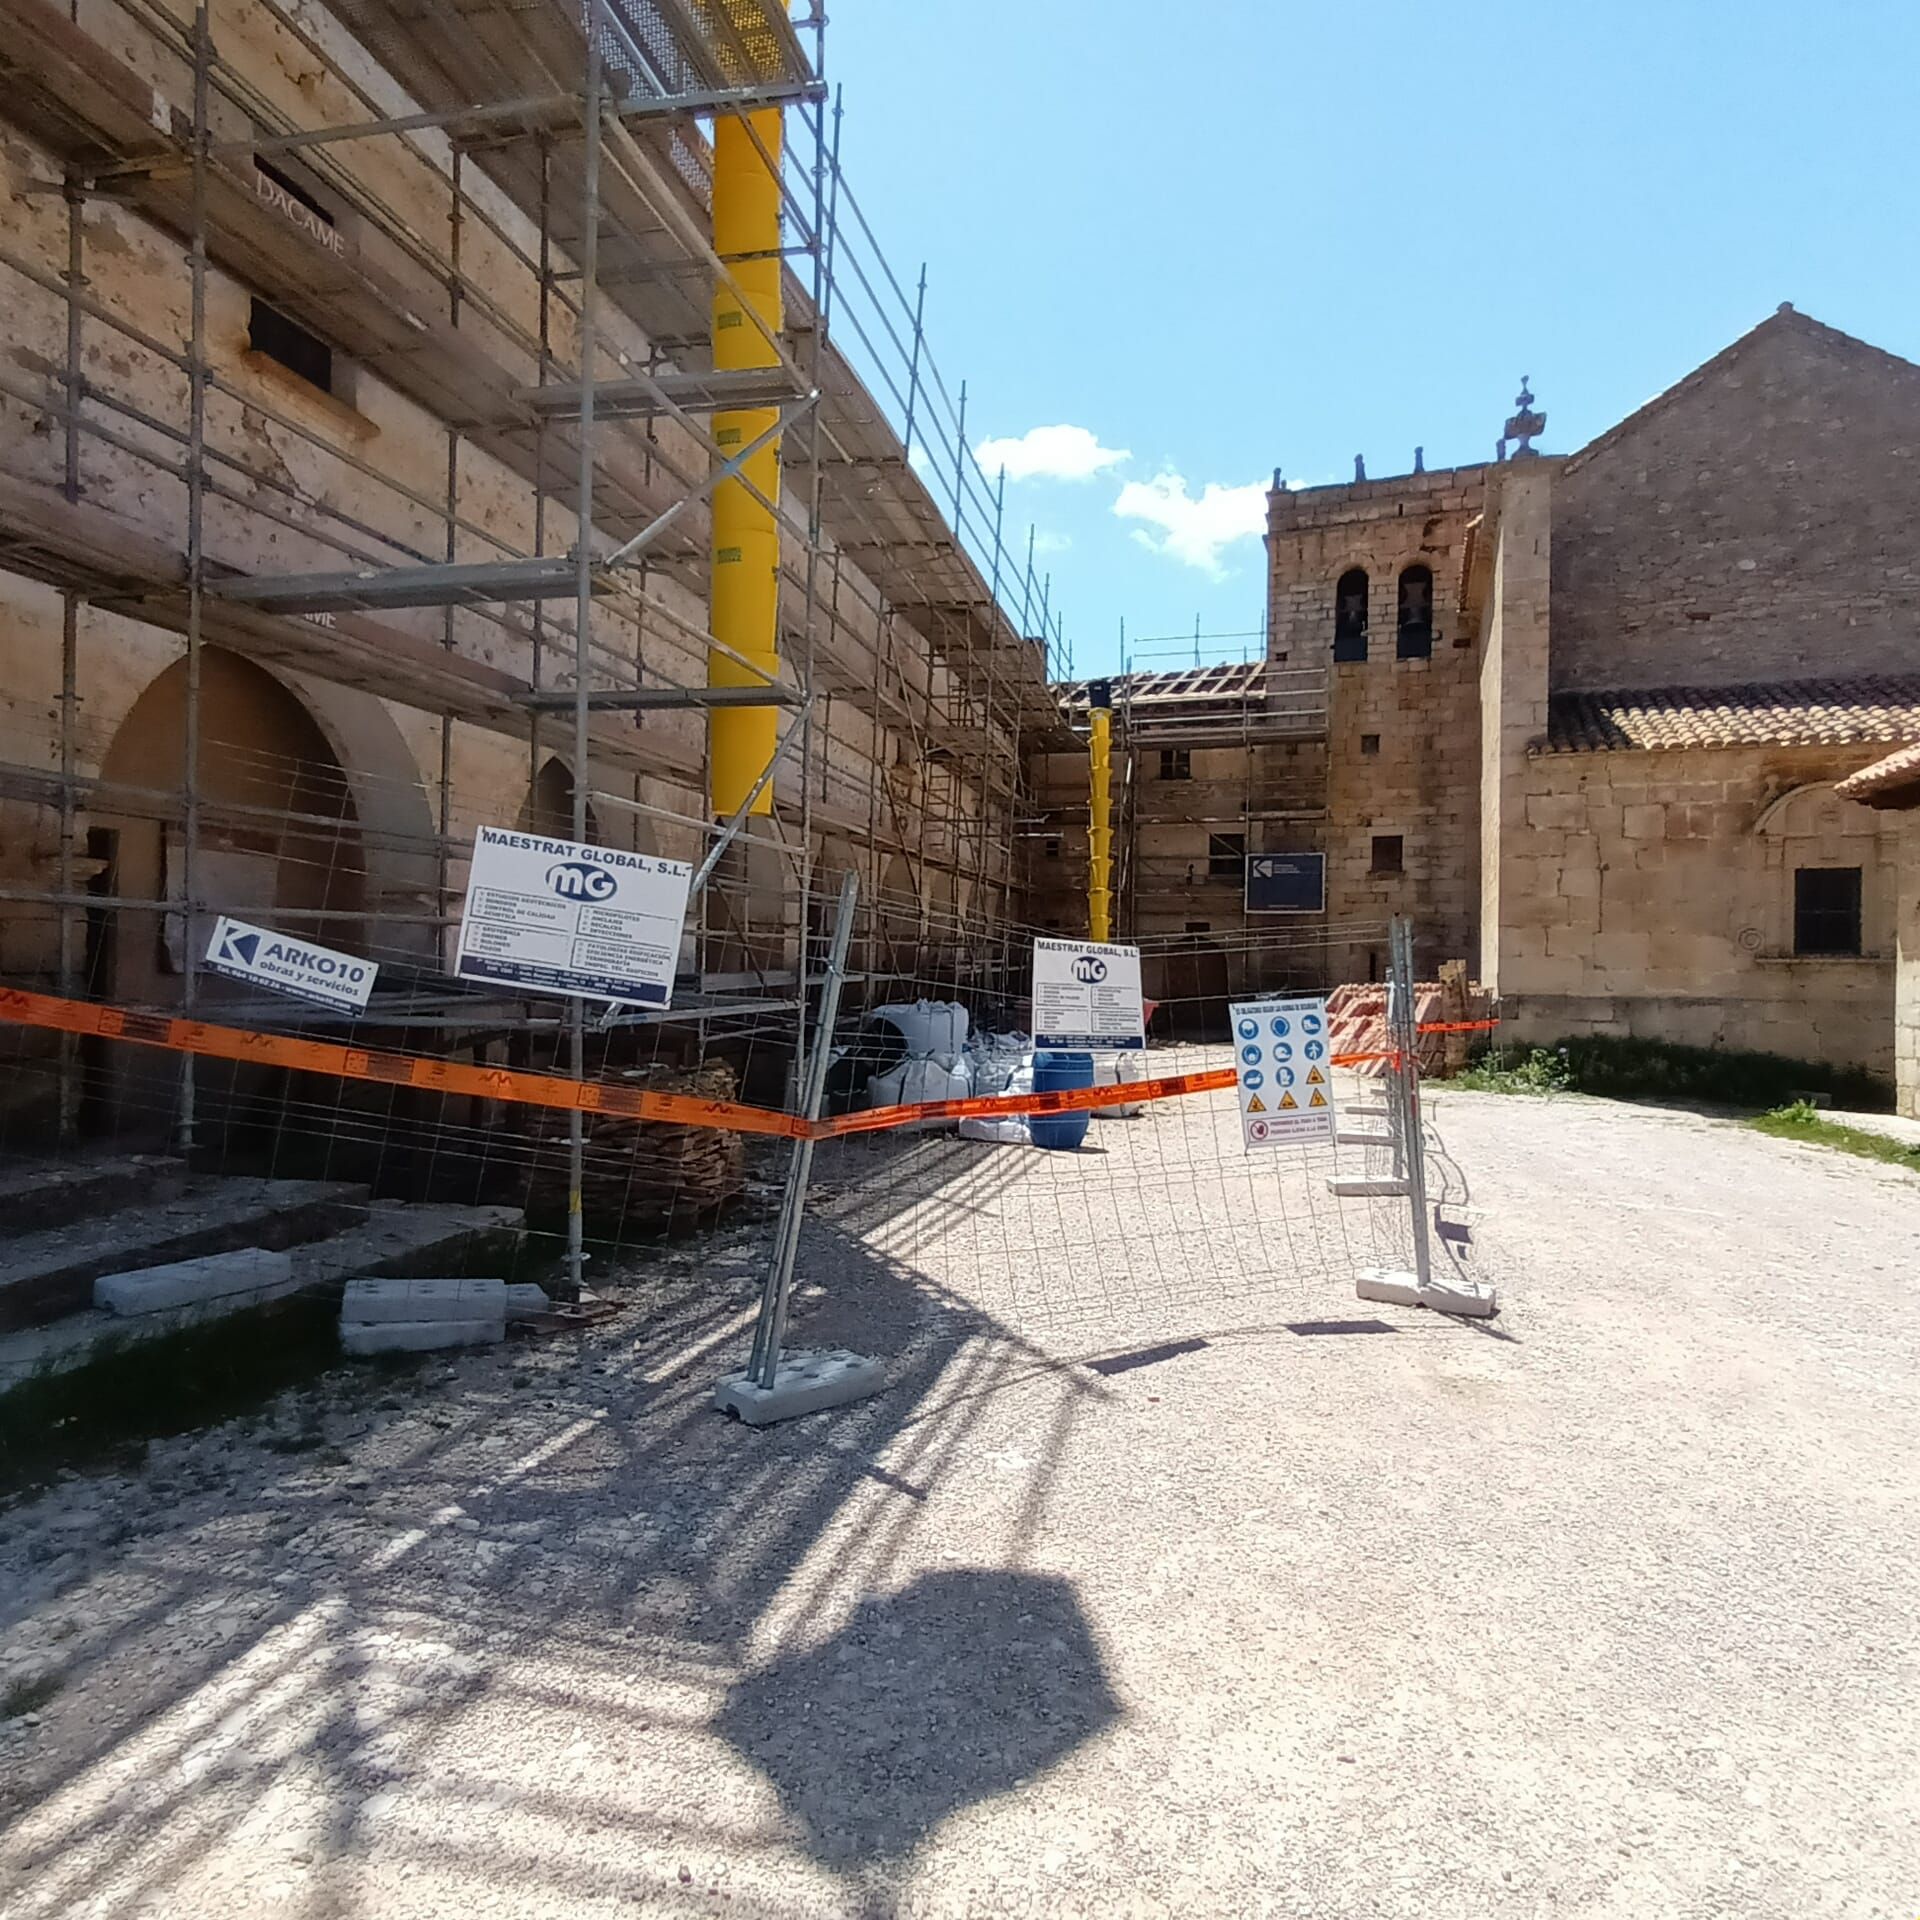 Los andamios invaden el santuario de Sant Joan de Penyagolosa